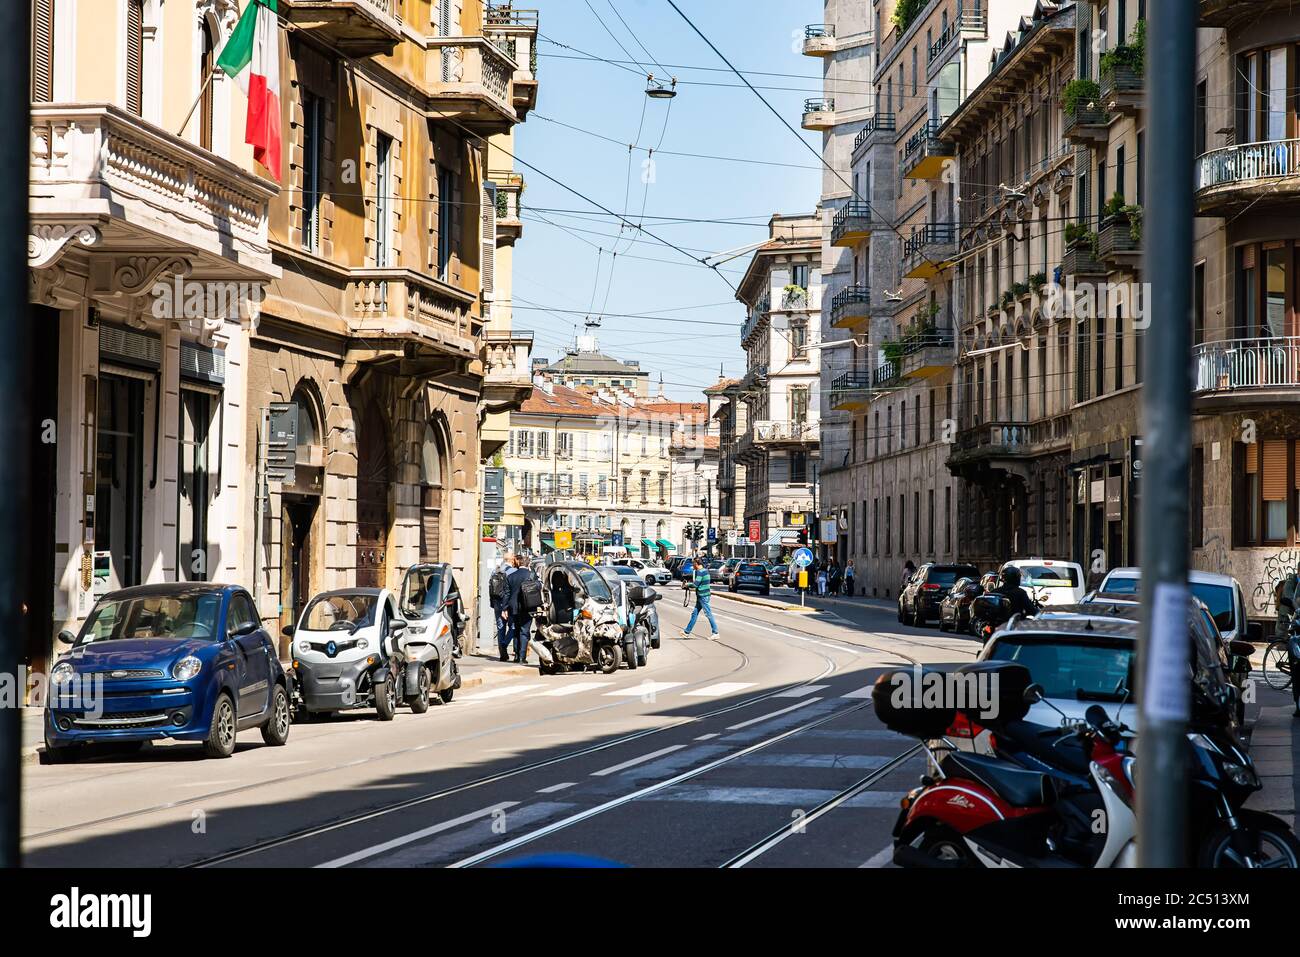 Milano. Italia - 22 maggio 2019: Corso Magenta Street a Milano. Architettura storica. Foto Stock